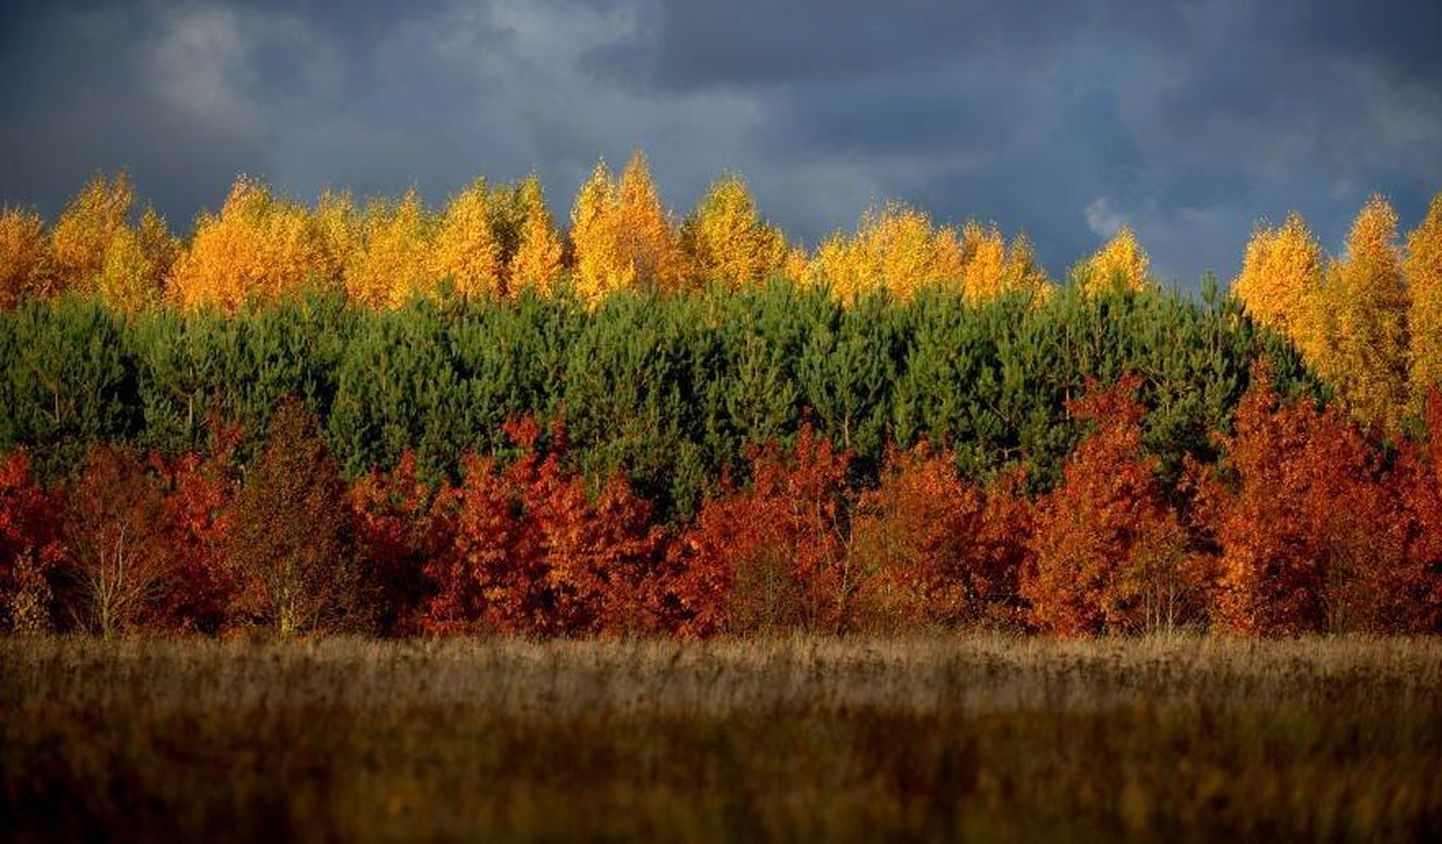 Leedu lipu värvides mets.